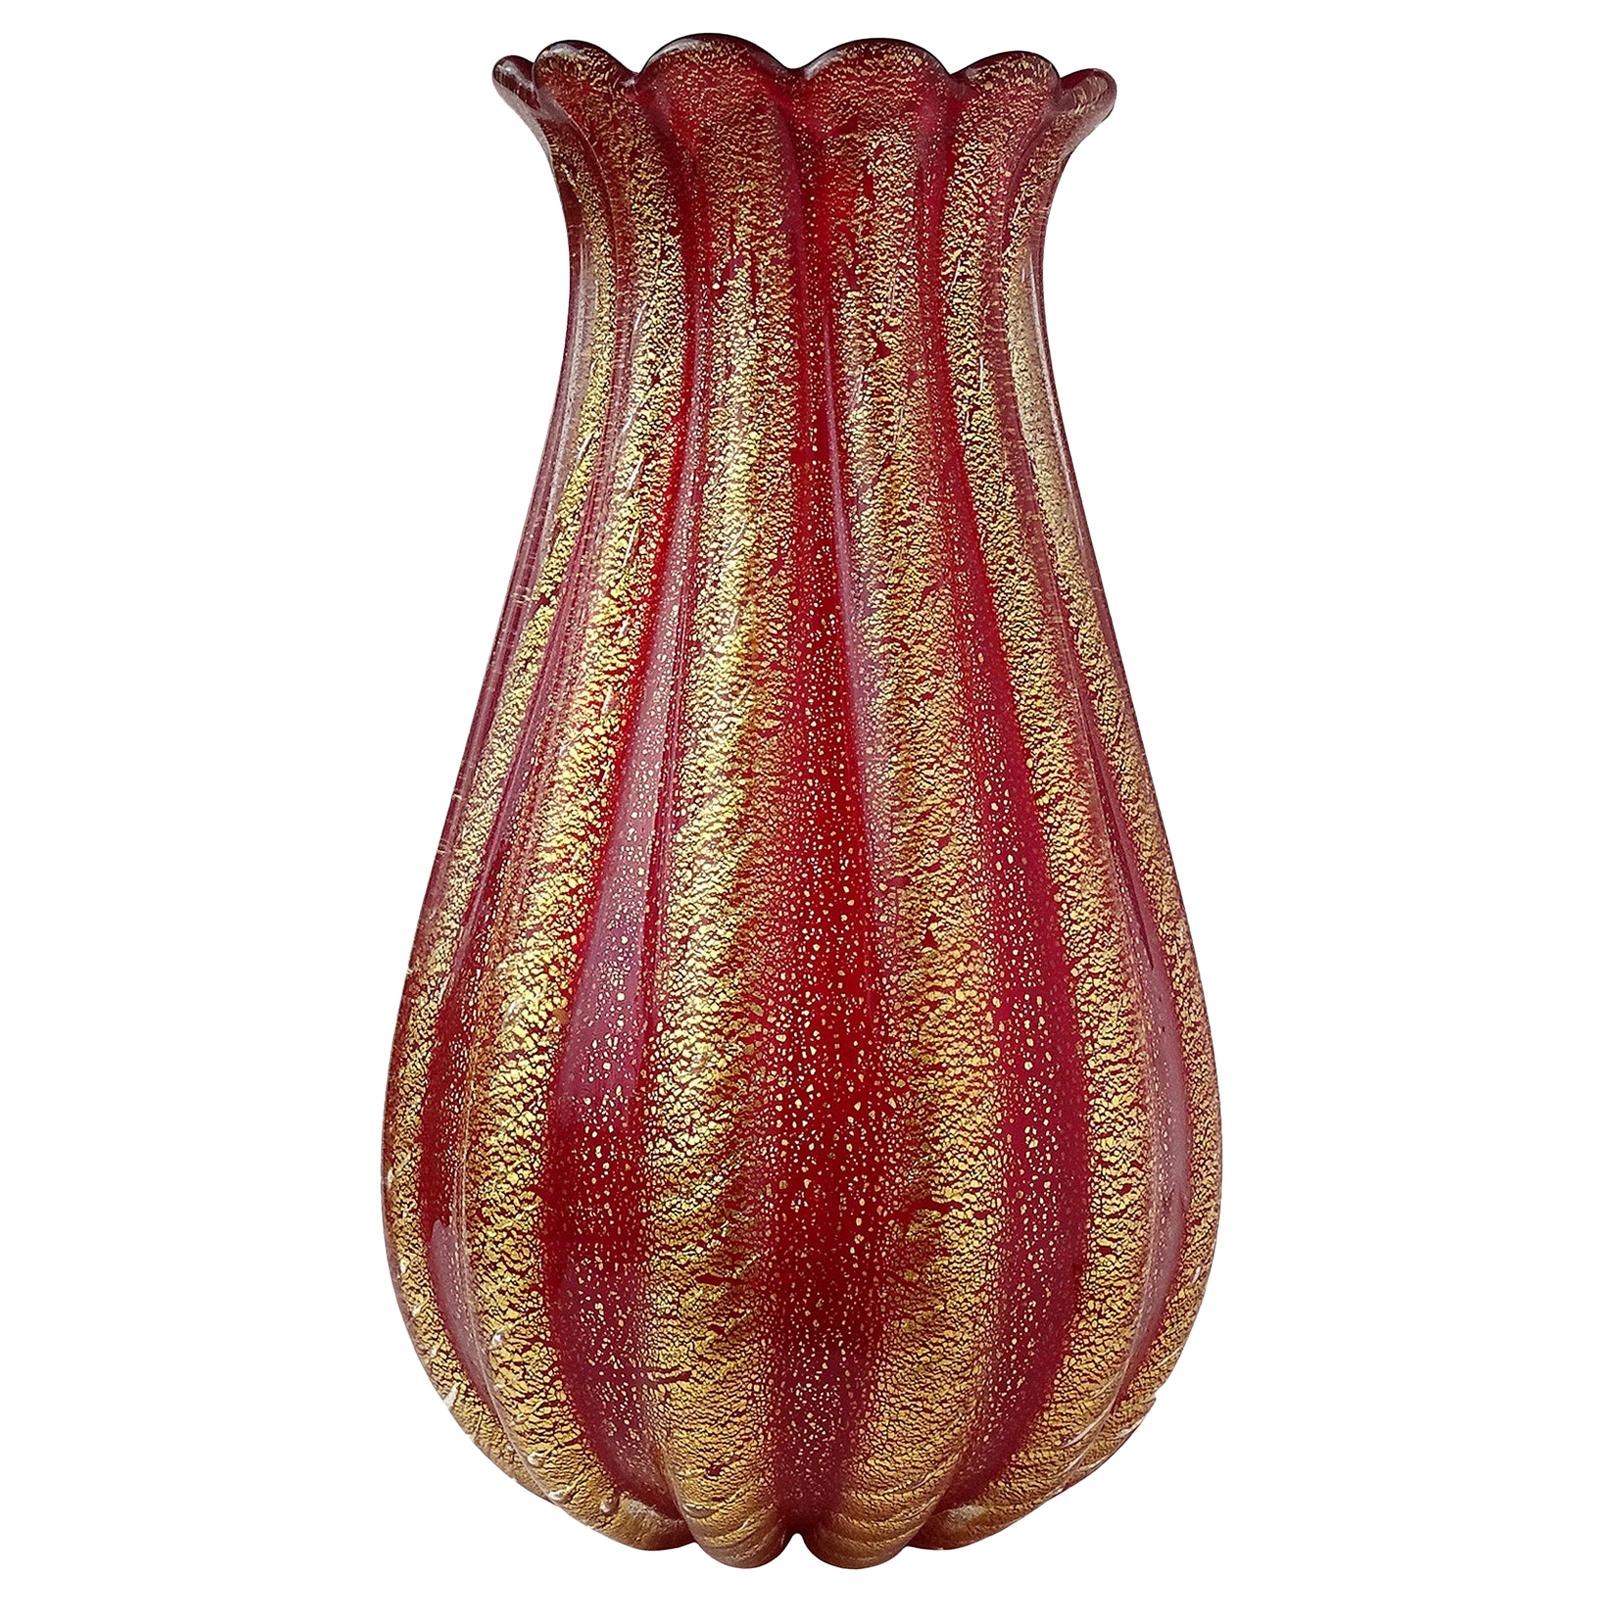 Barovier Toso Murano Red Gold Flecks Italian Art Glass Ribbed Flower Vase